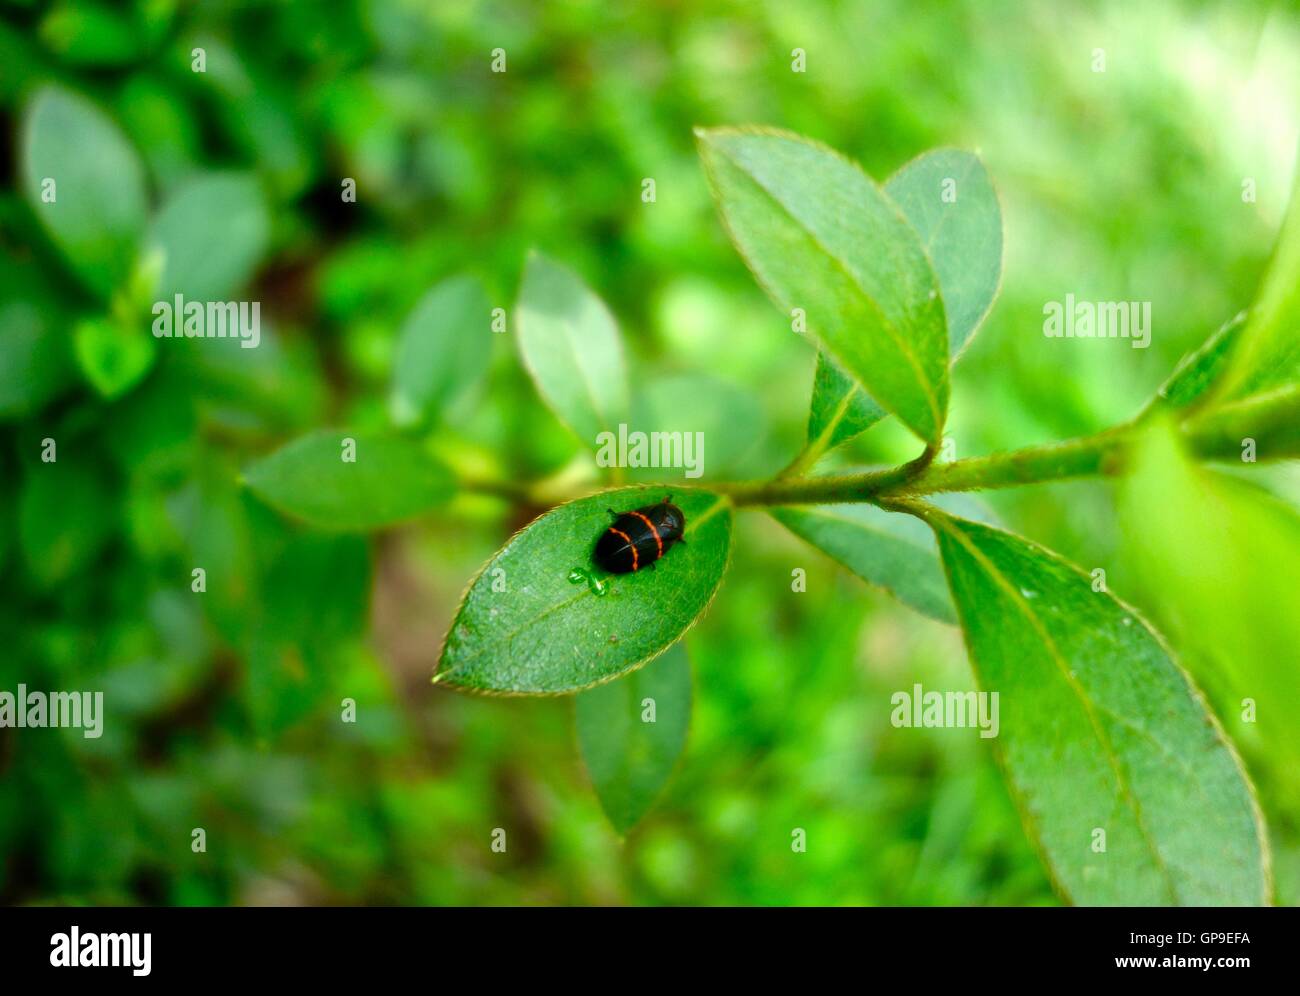 Cierre de un escarabajo negro con franjas rojas sobre una hoja. Foto de stock